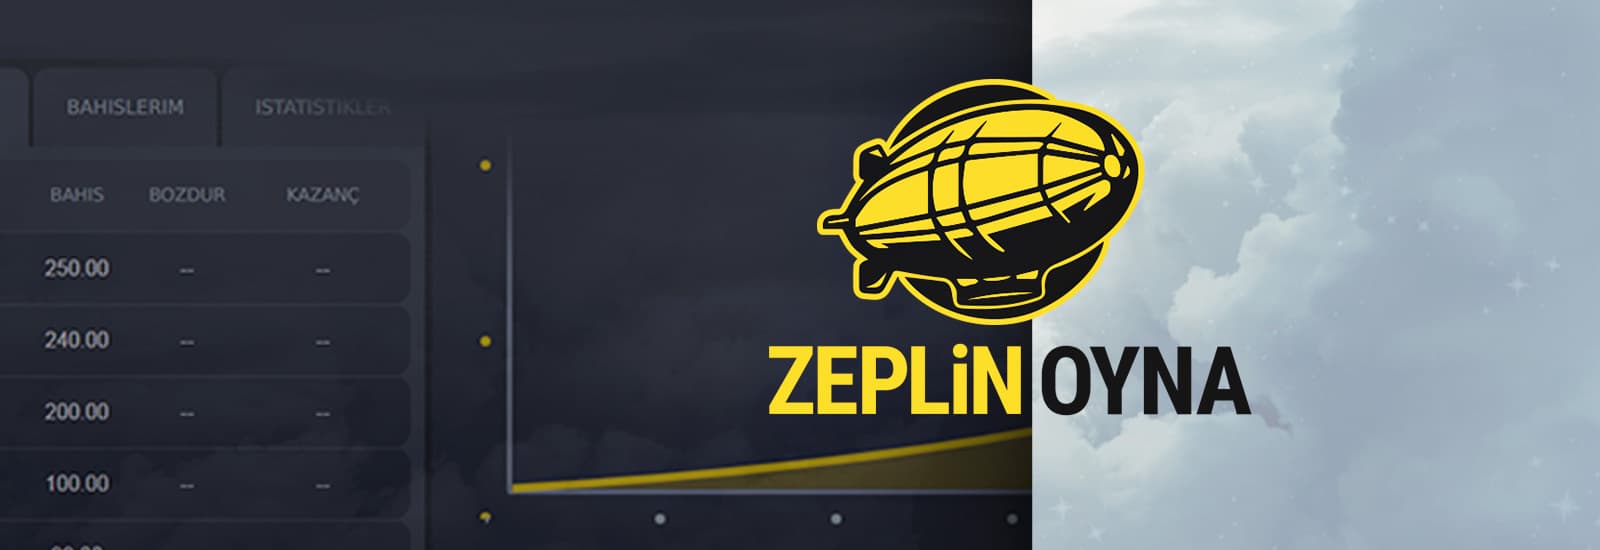 Zeppelin Review